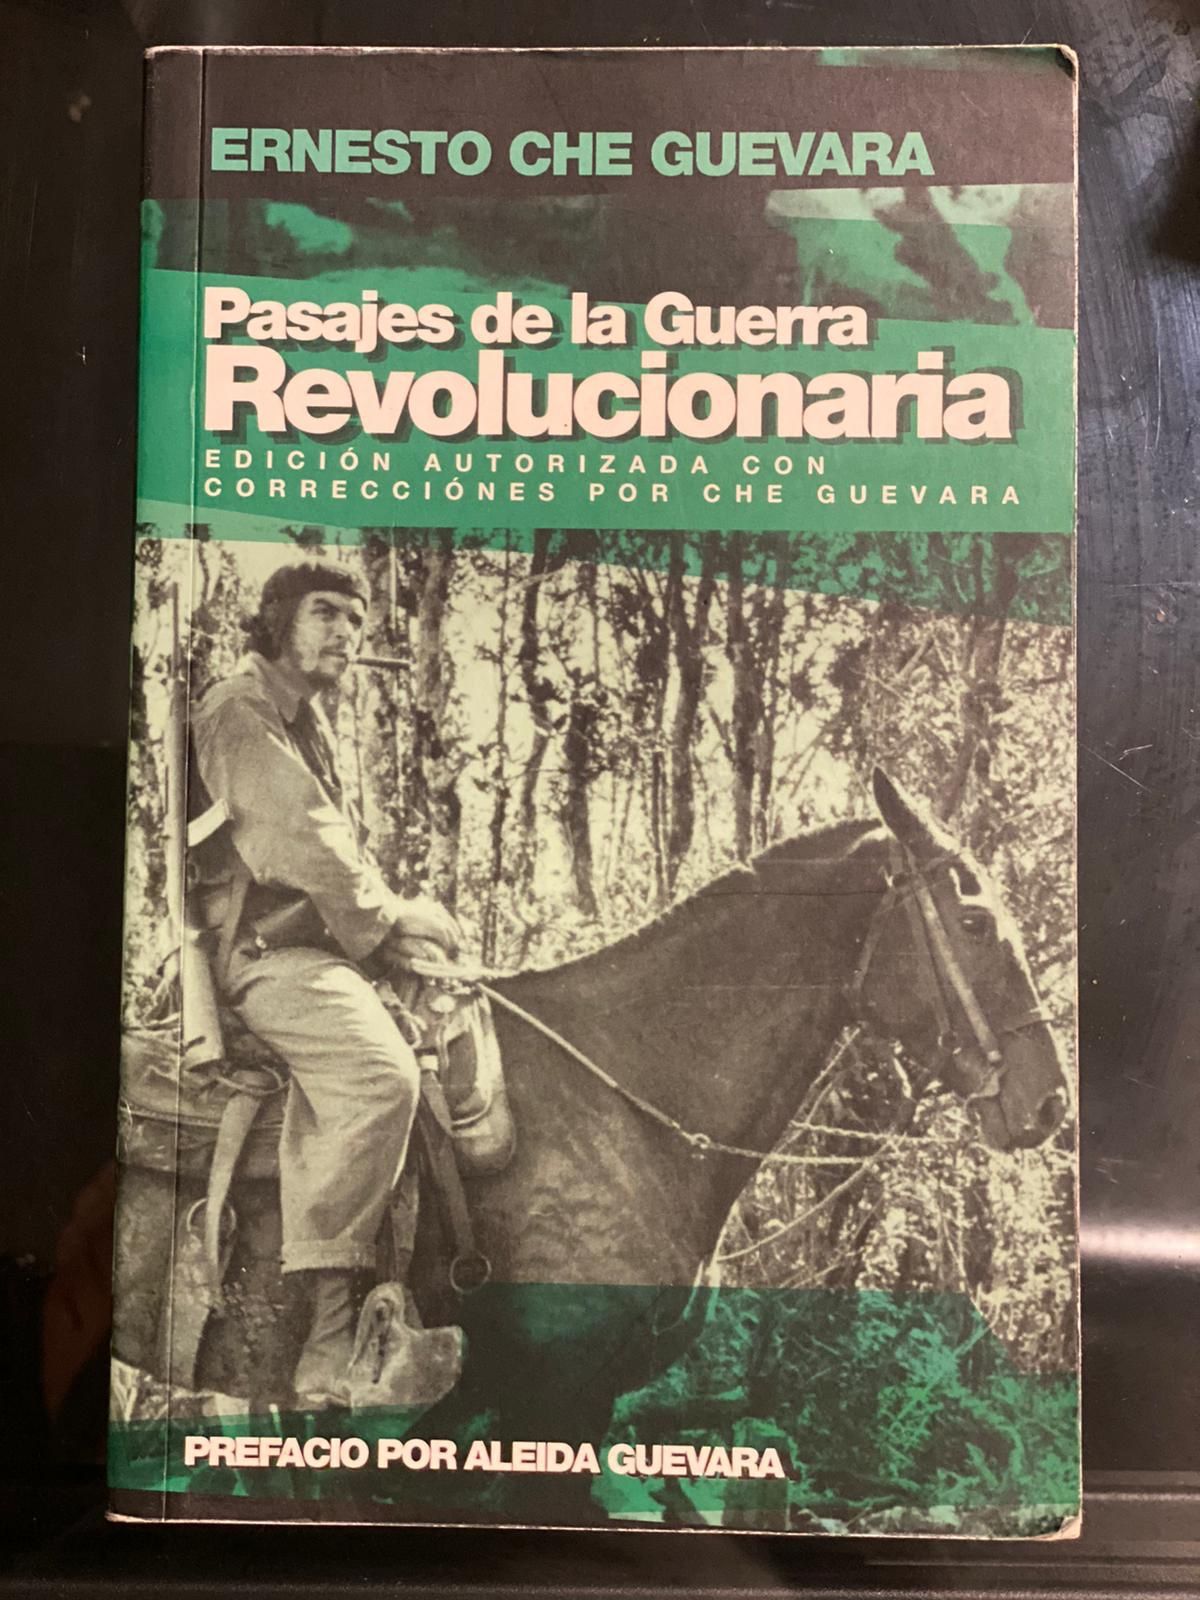 Ernesto Che Guevara books